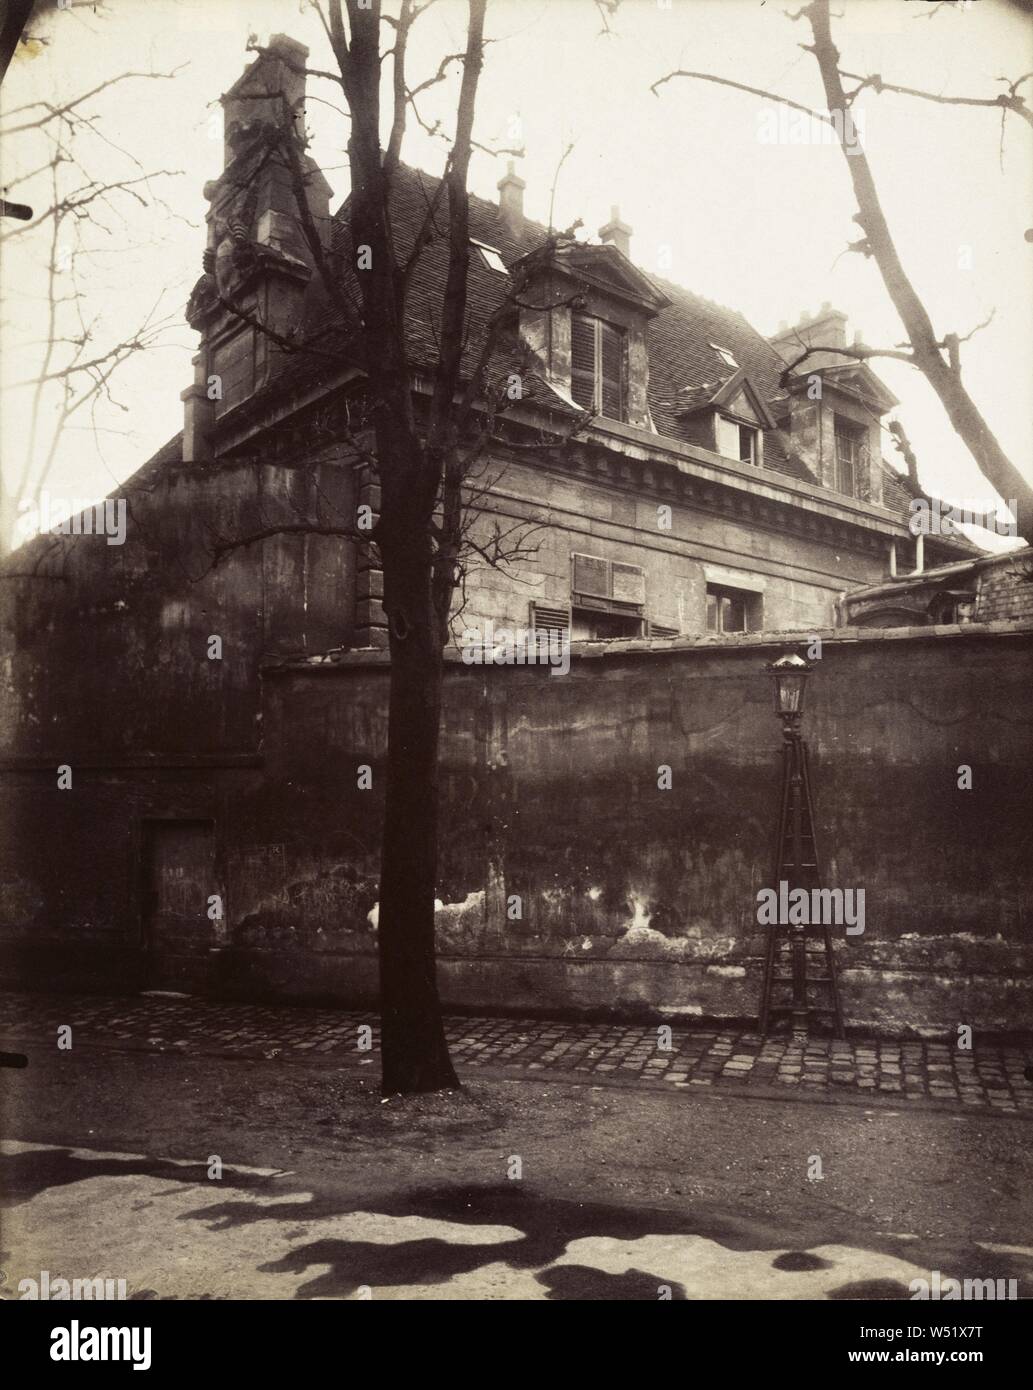 Old Convent, avenue de l'Observatoire, Eugène Atget (French, 1857 - 1927), Paris, France, 1923, Albumen silver print, 22.1 x 18.3 cm (8 11/16 x 7 3/16 in Stock Photo